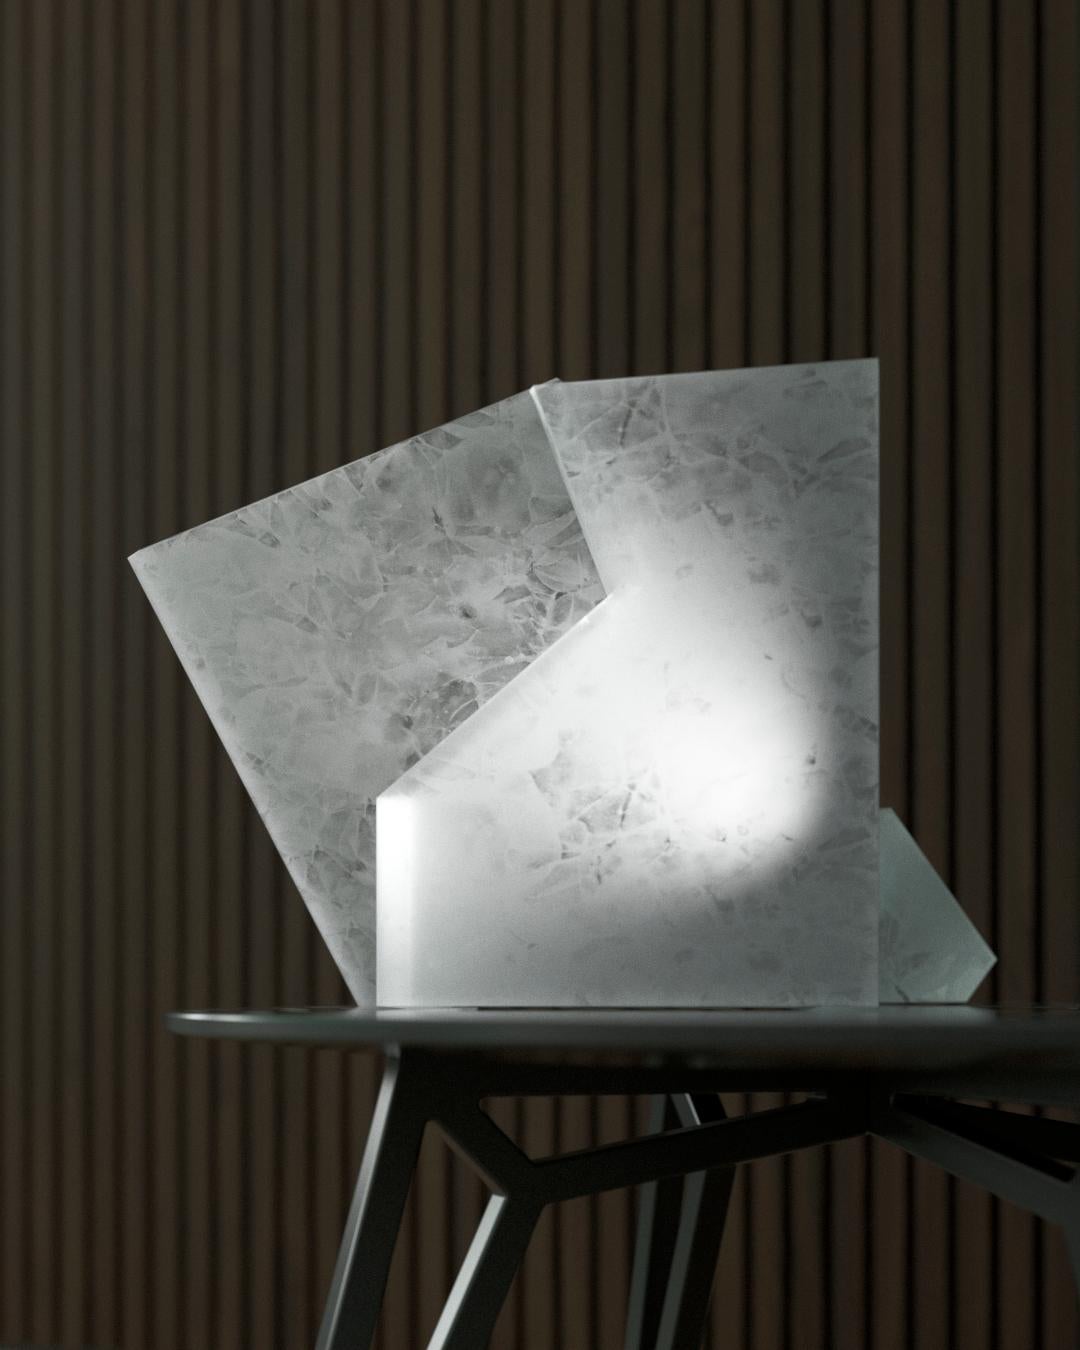 Fold- Moderne Tischleuchte aus recyceltem Glas des 21. Jahrhunderts in seidigem Weiß

Die Falte ist die Leuchte, die sich die Plastizität eines völlig anderen Materials zunutze macht. Ein Dialog der Reflexionen und Brechungen, der durch die